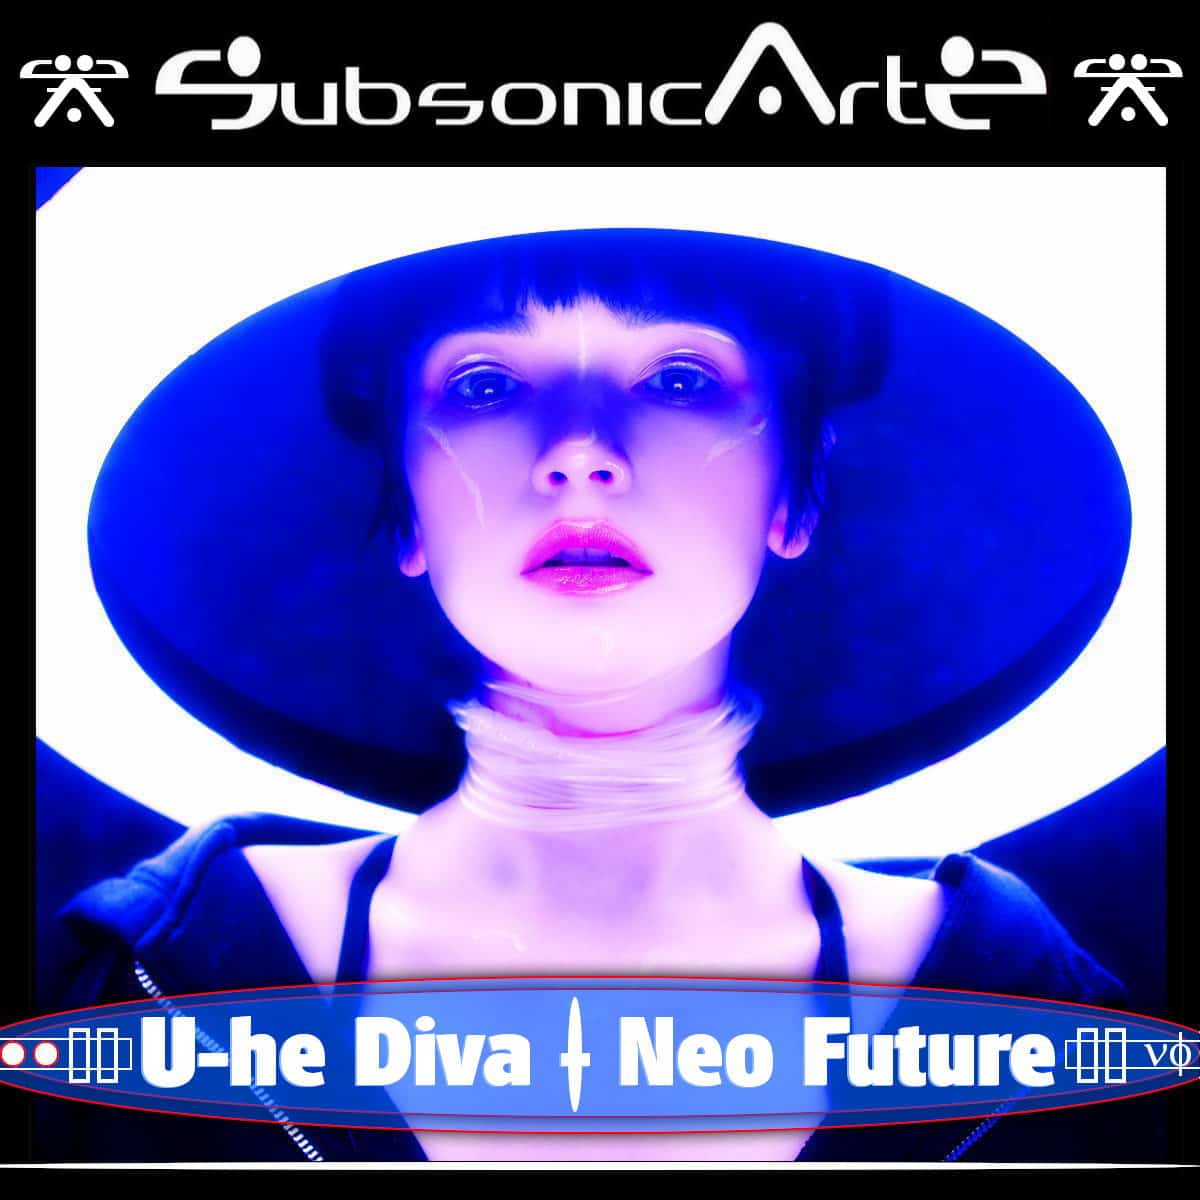 Subsonic Artz – Neo Future for DIVA